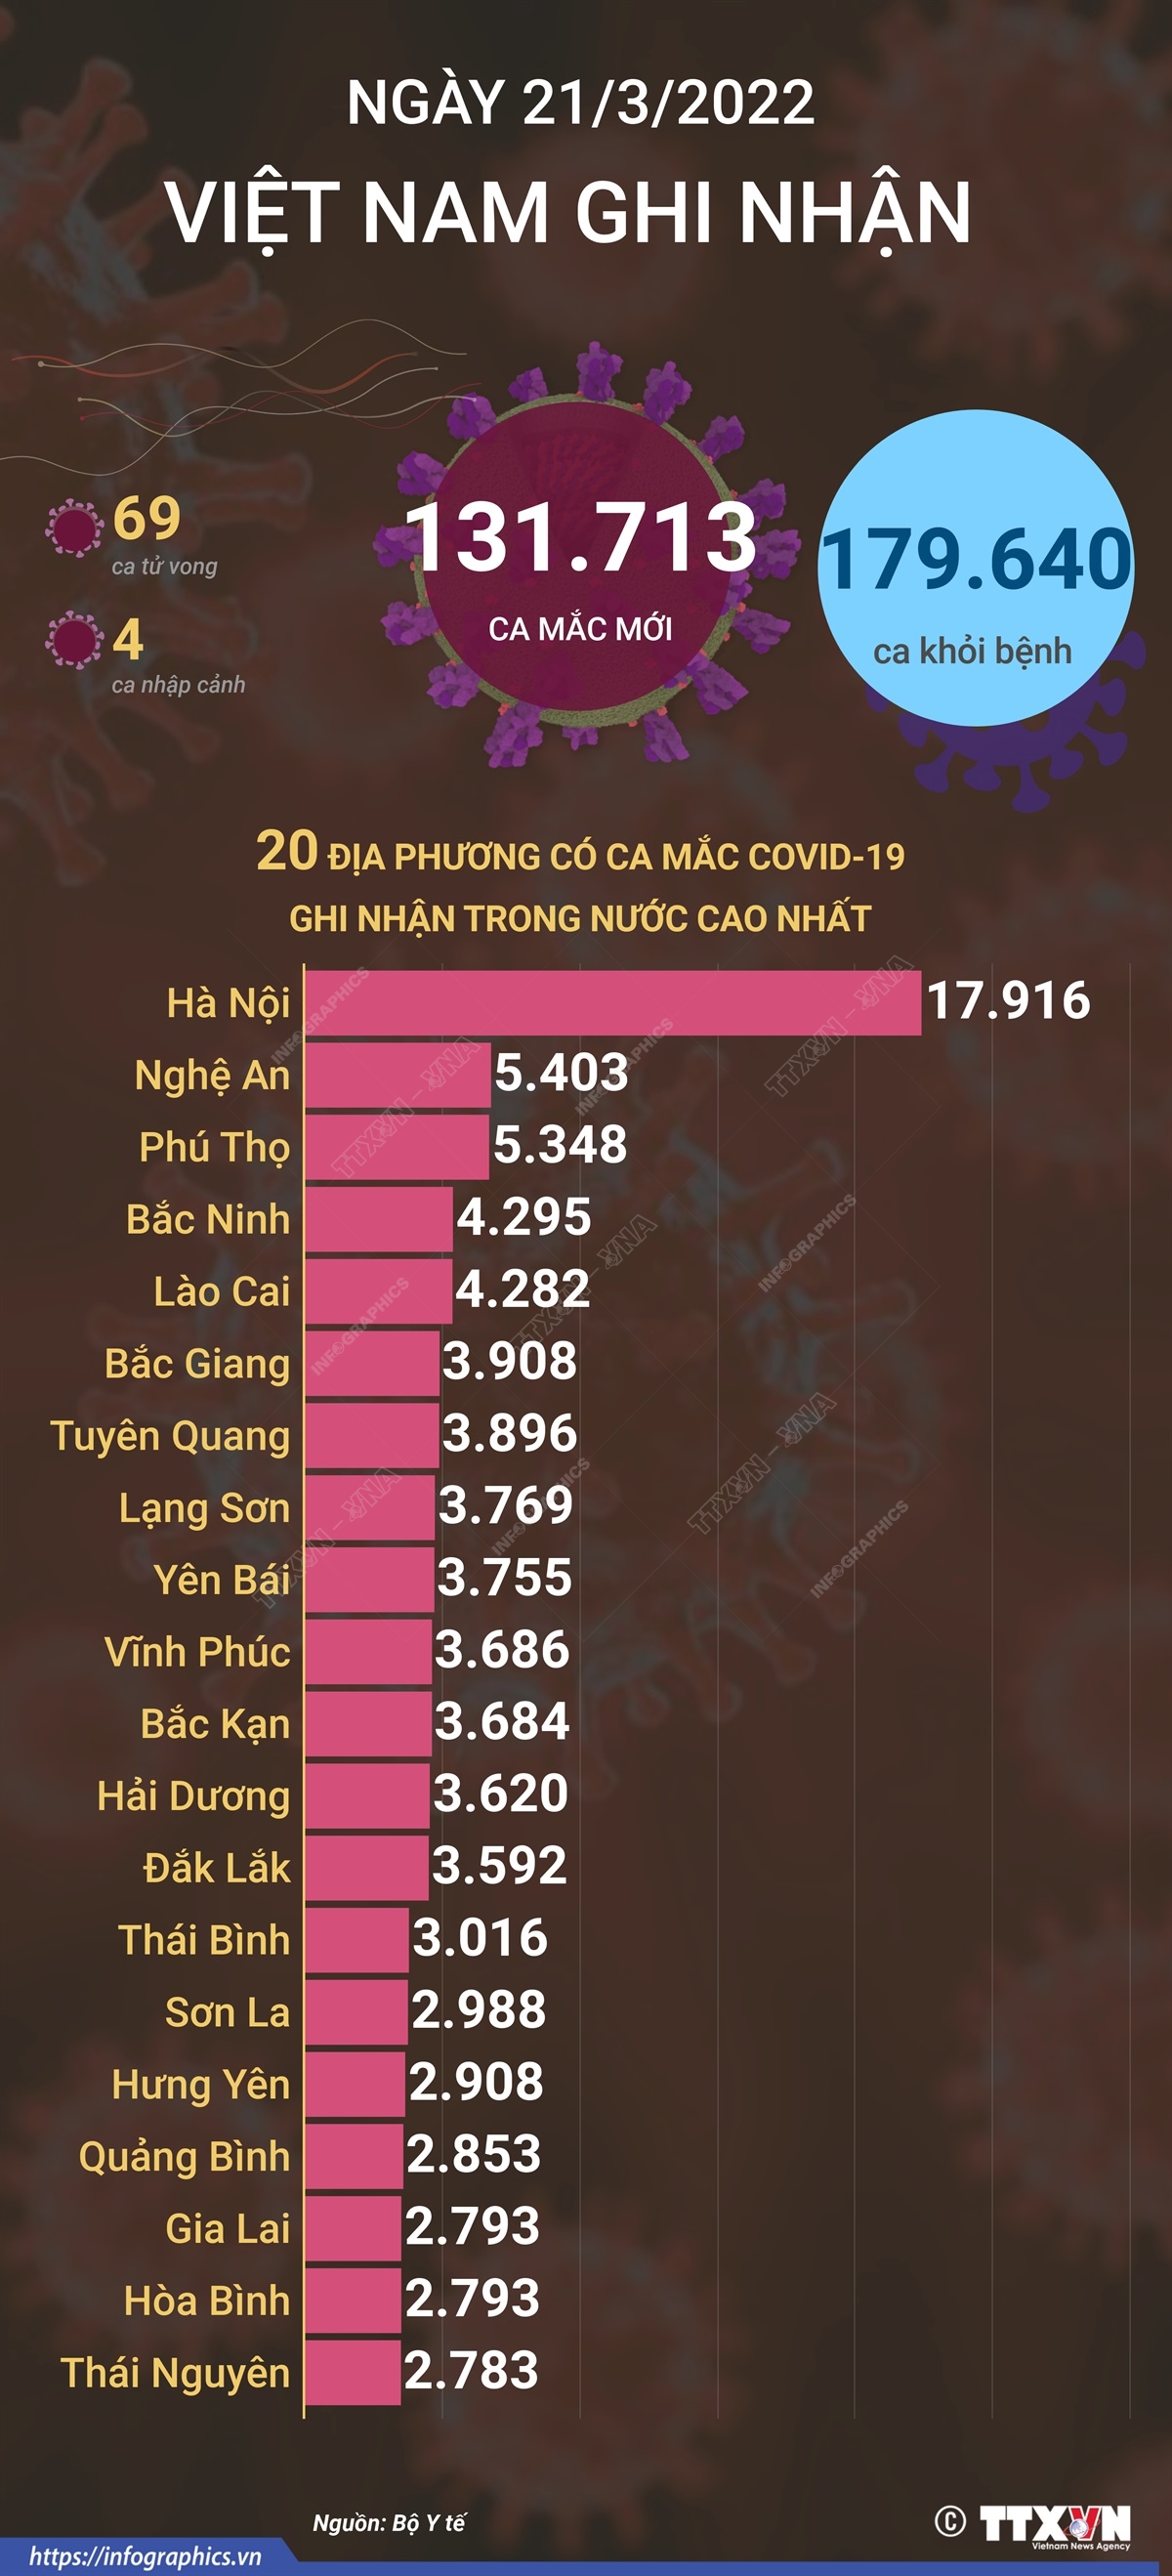 Ngày 21/3/2022, Việt Nam ghi nhận 131.713 ca mắc mới và 69 ca tử vong do COVID-19